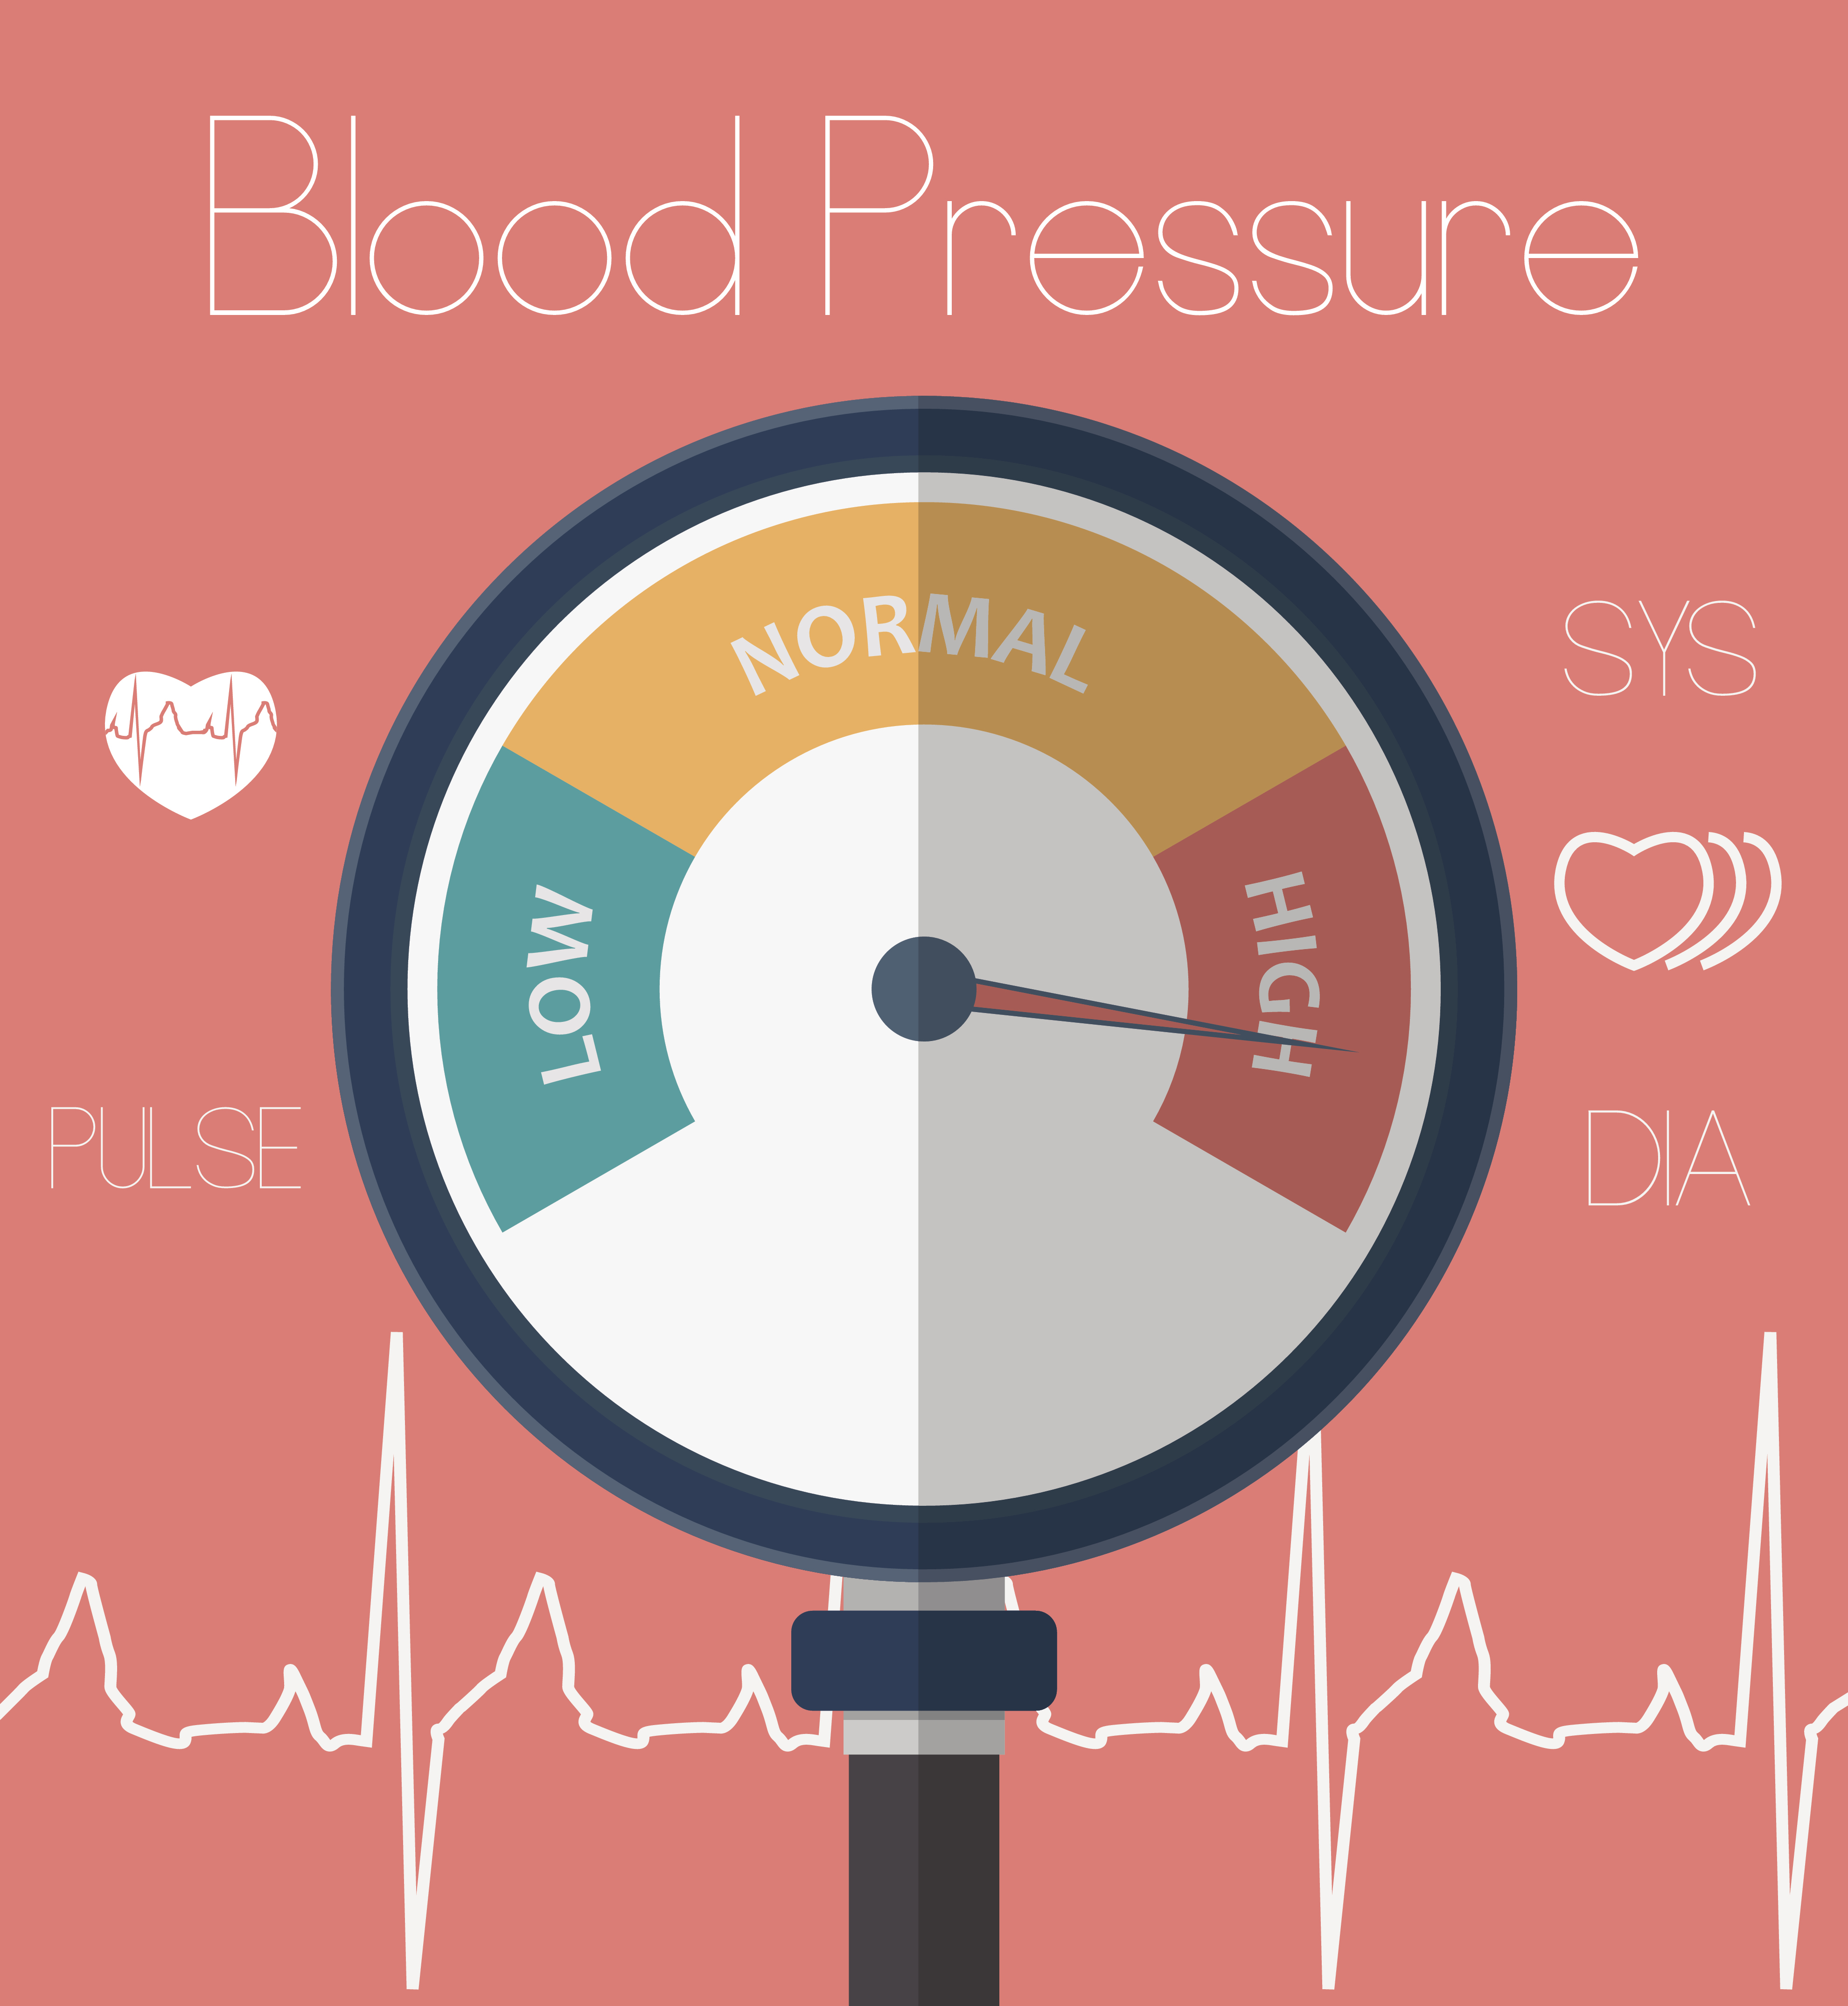 is blood pressure a disease